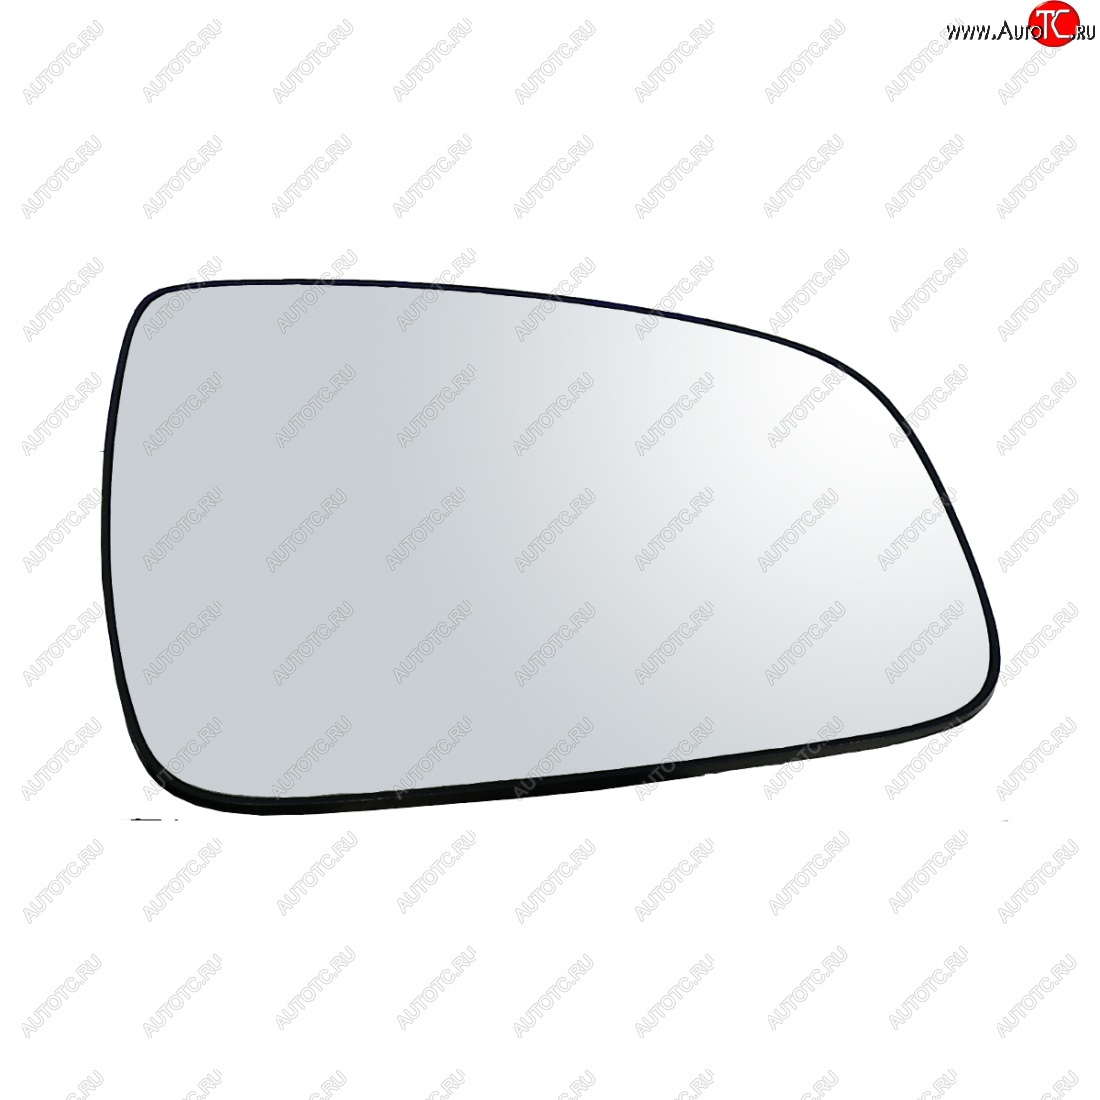 289 р. Правое зеркальное полотно AutoBlik2 Nissan Terrano D10 дорестайлинг (2013-2016) (без антибликового покрытия)